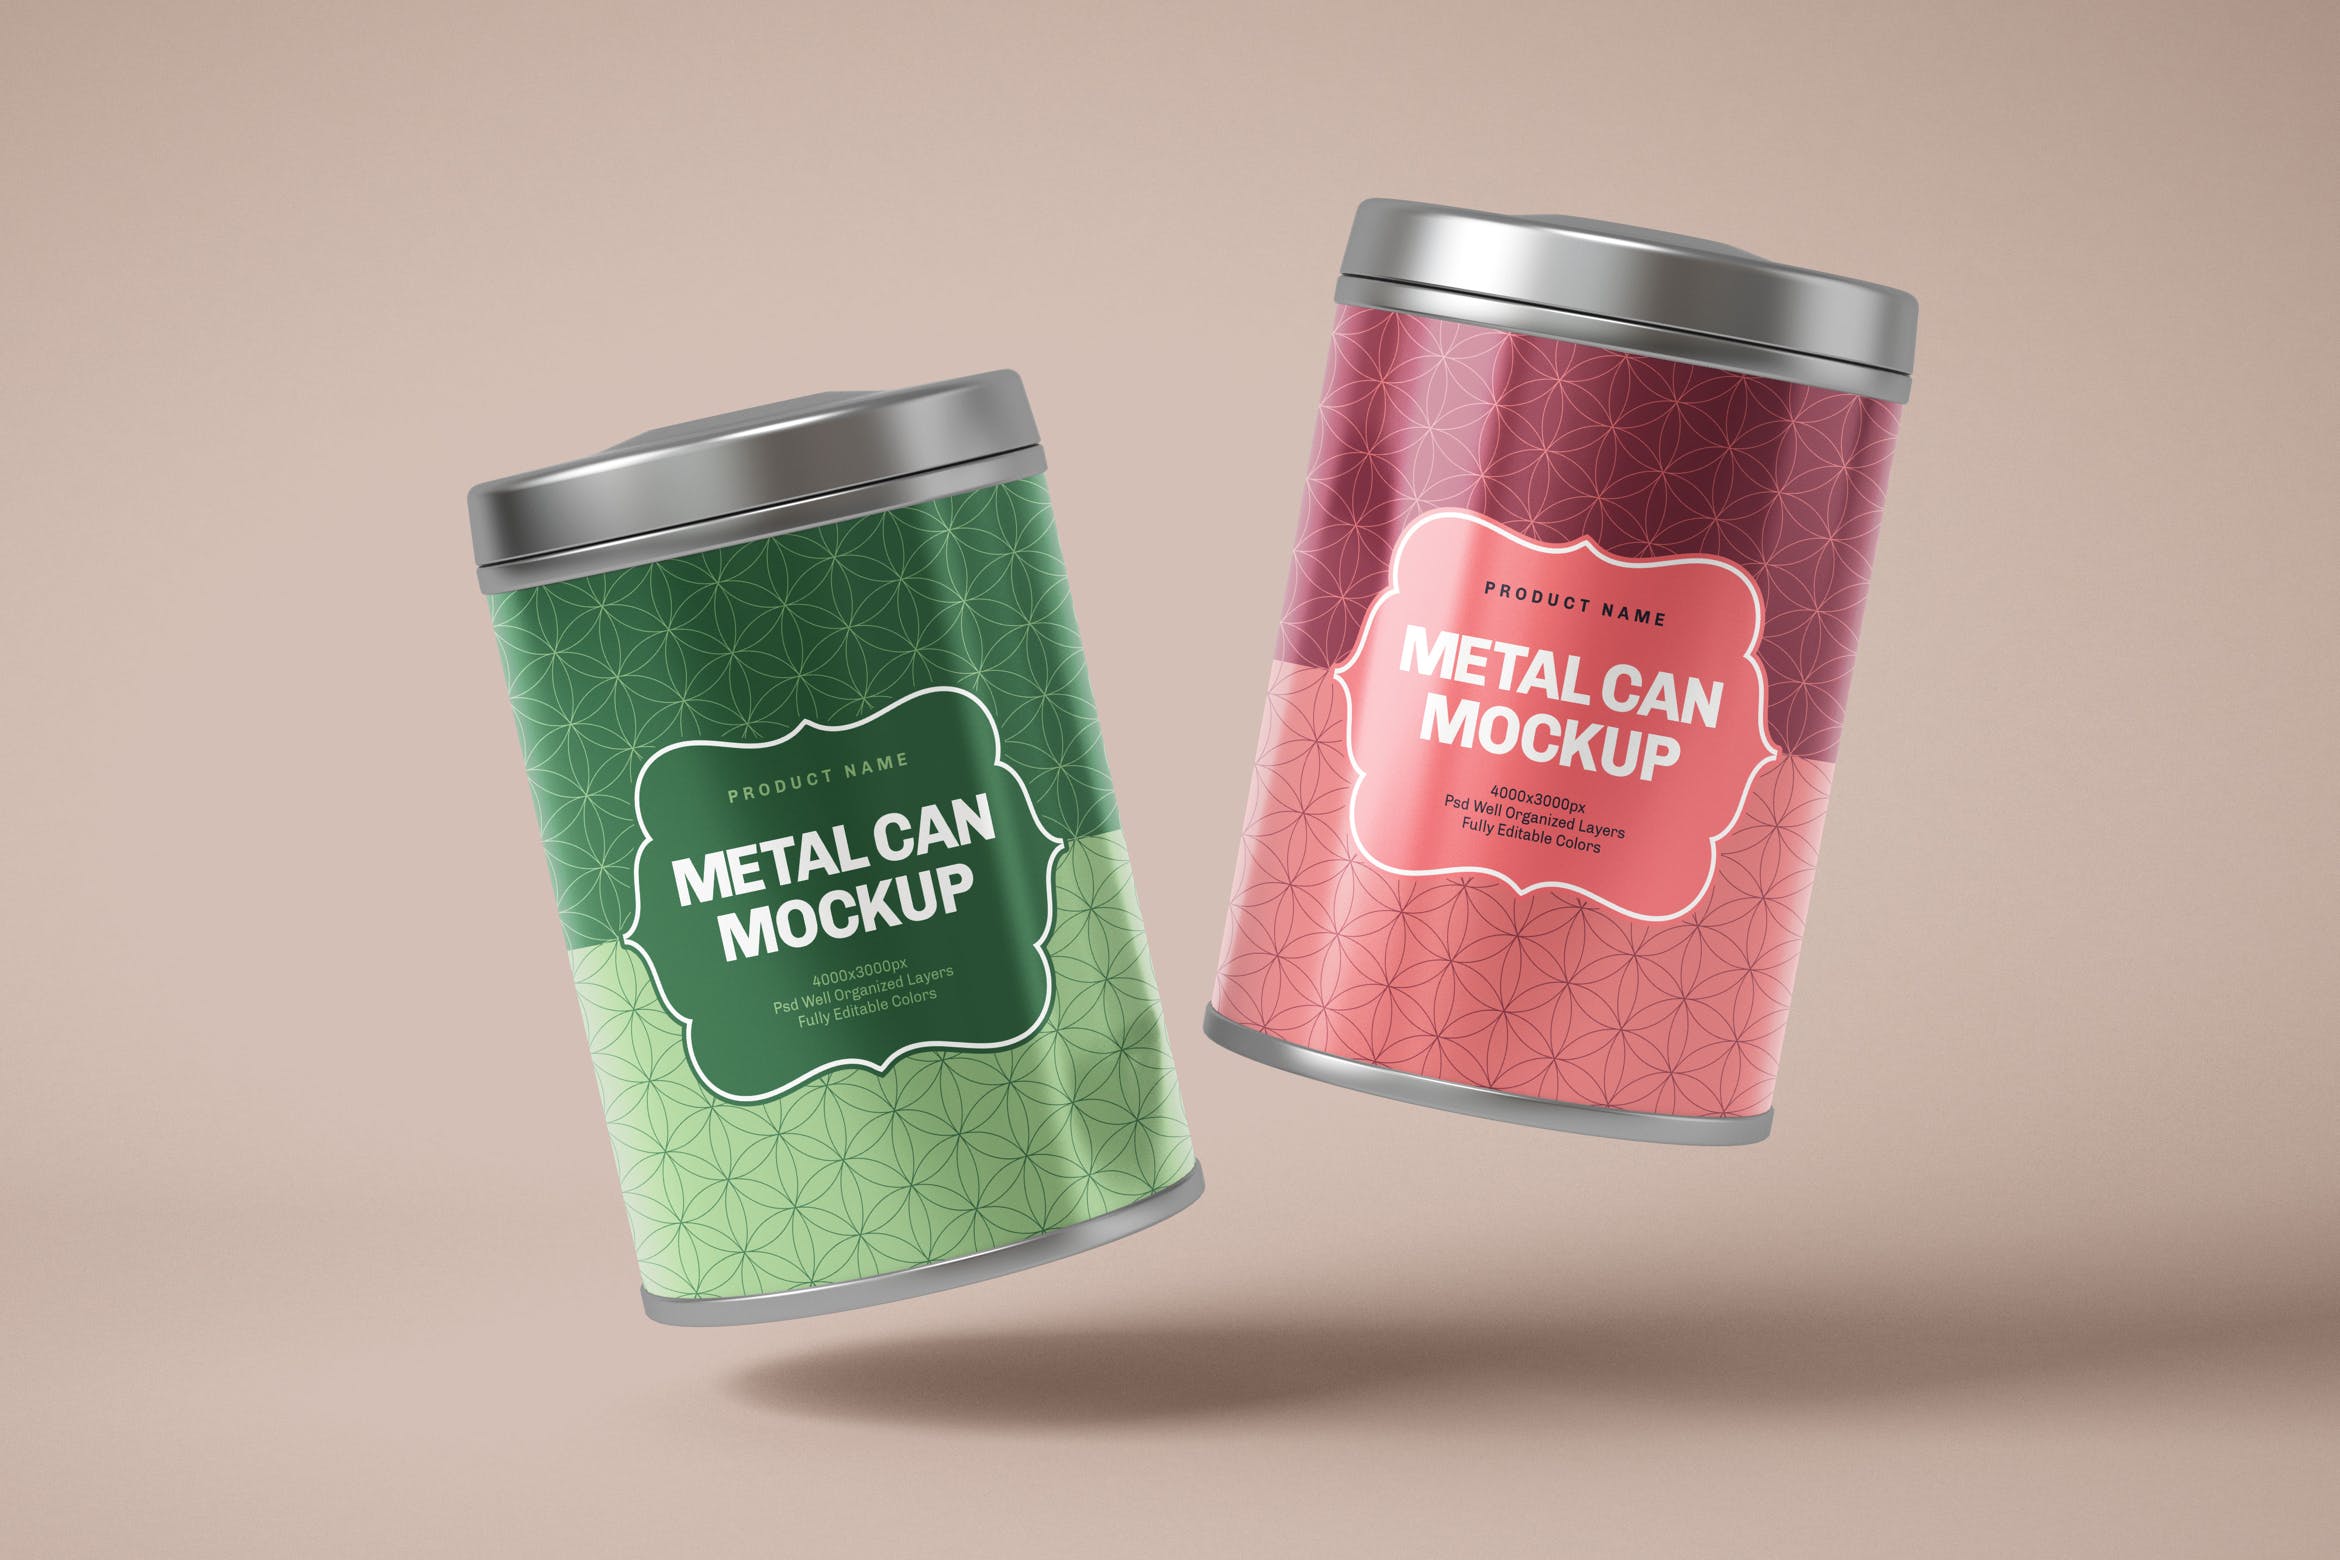 茶叶罐包装圆形锡盒设计样机 Glossy Round Tin Box Mockup设计素材模板